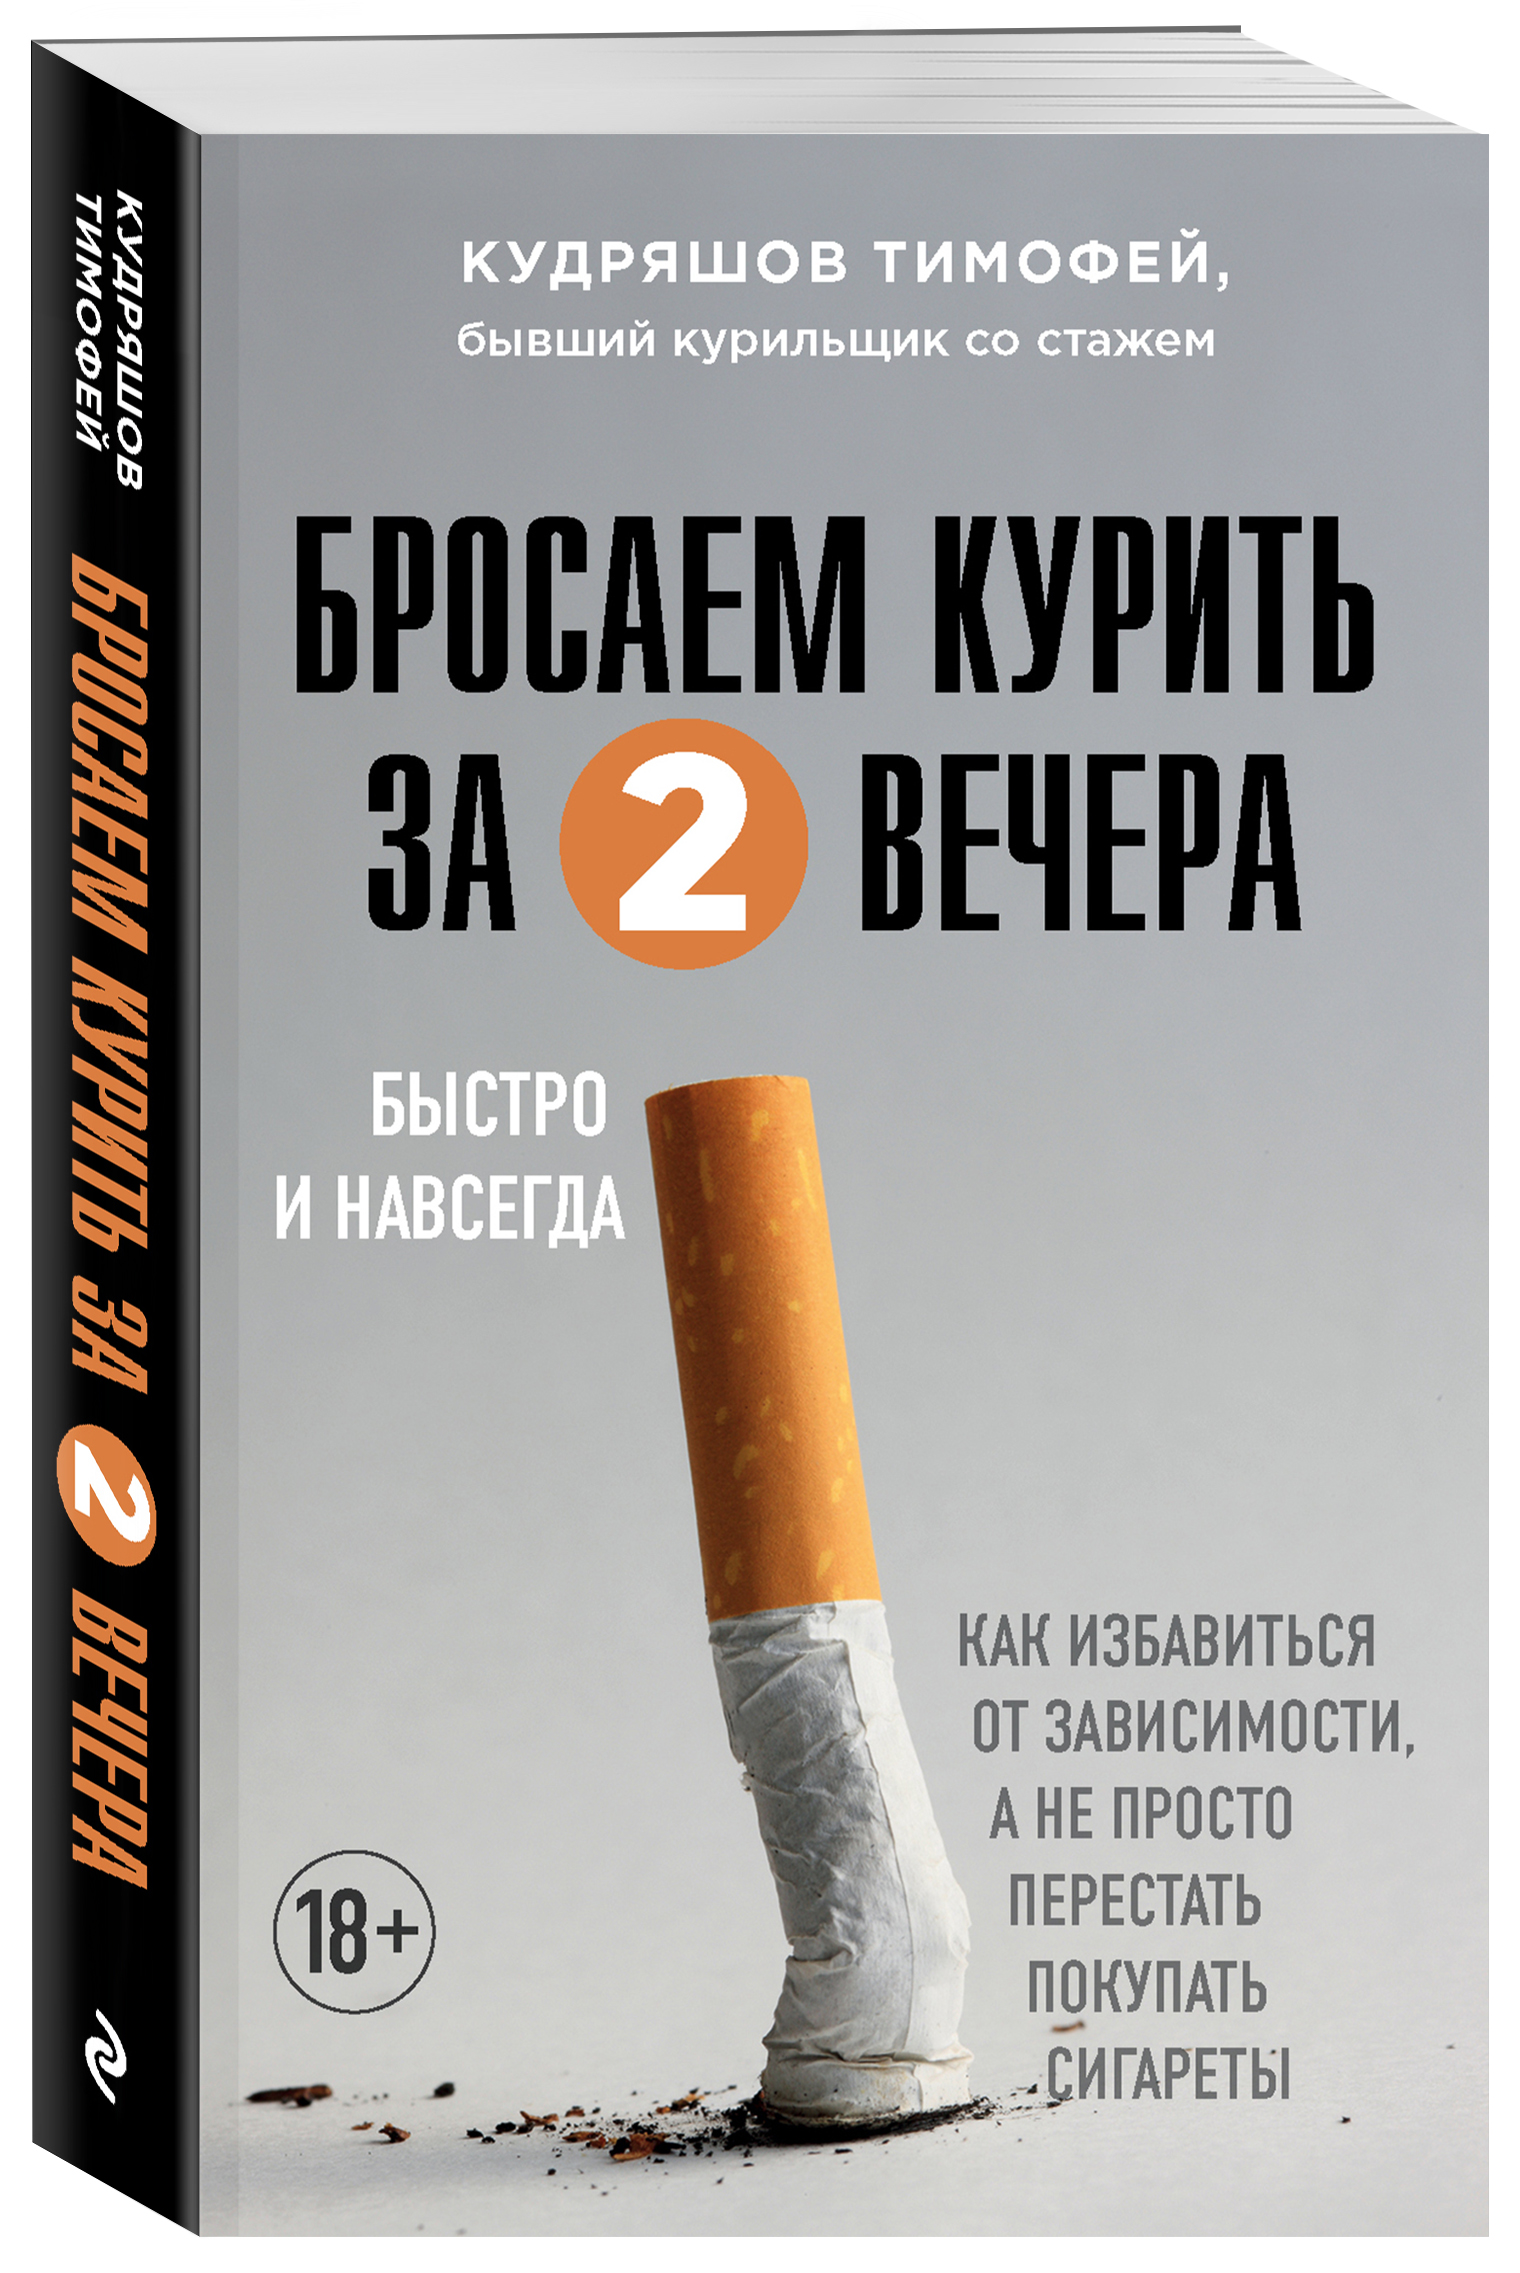 Сигареты Chapman